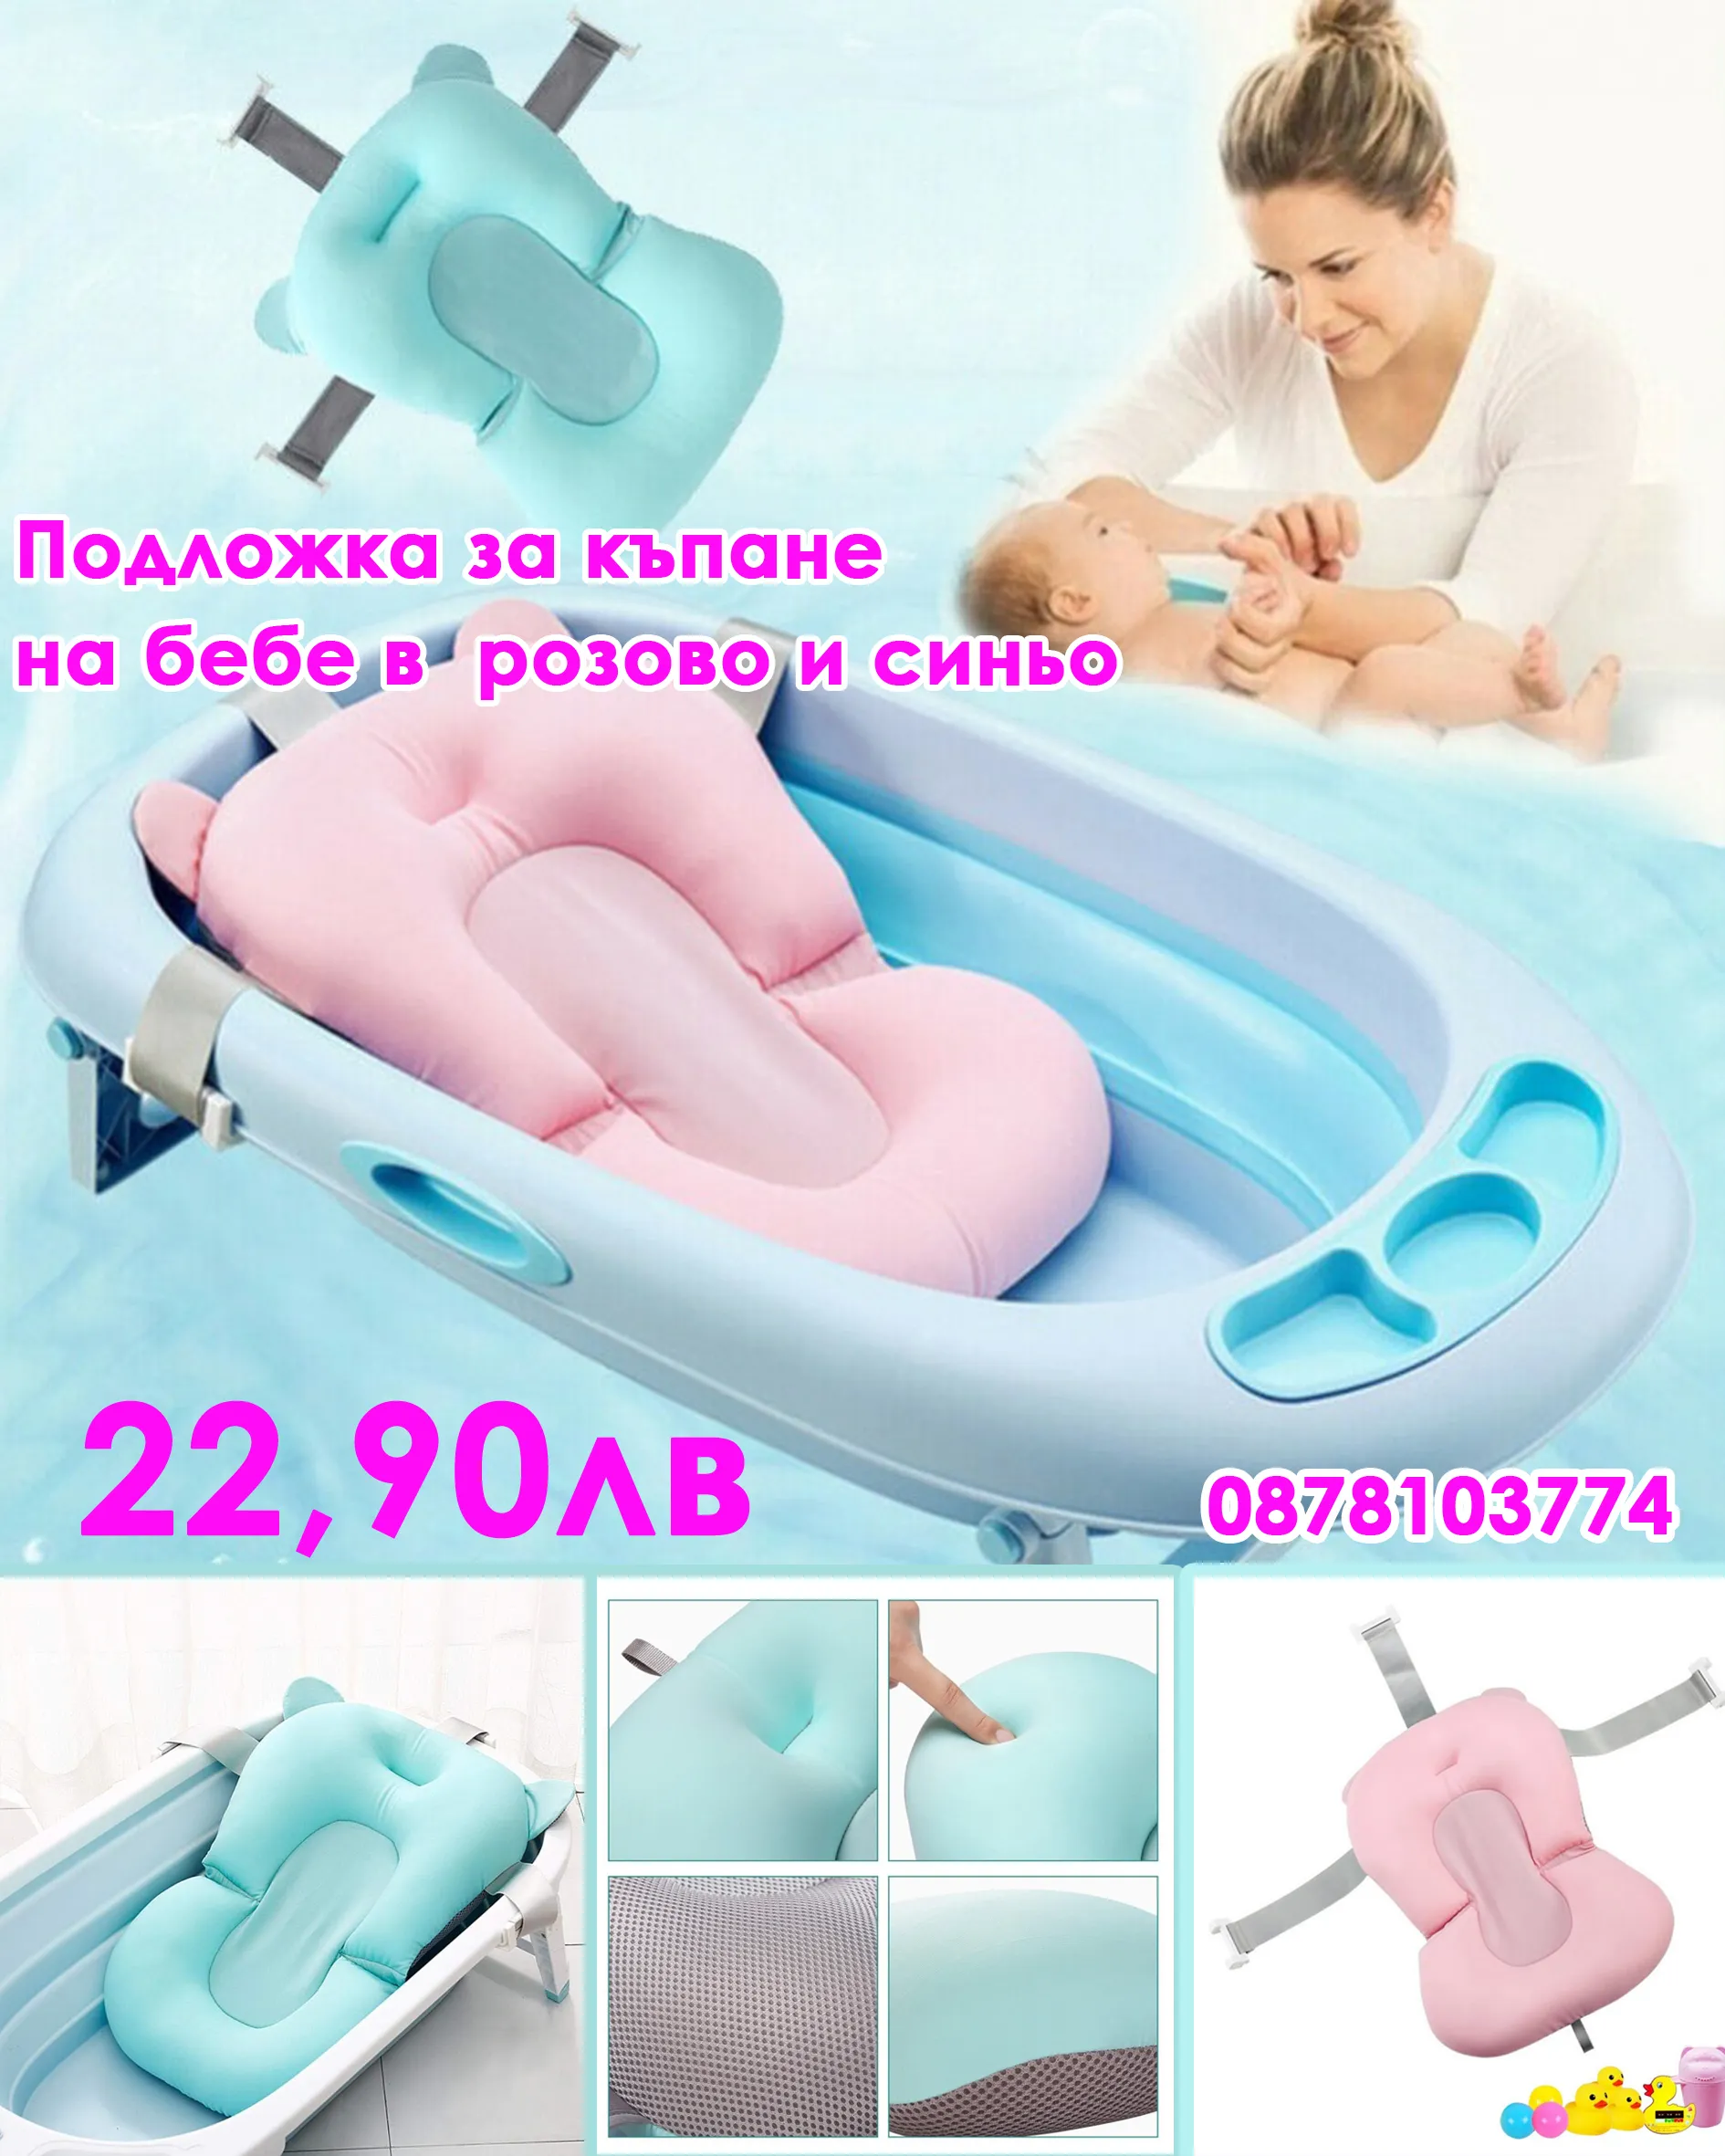 Подложка за бебешка вана с пълнеж - Подложка за къпане на бебе в розово и синьо 1